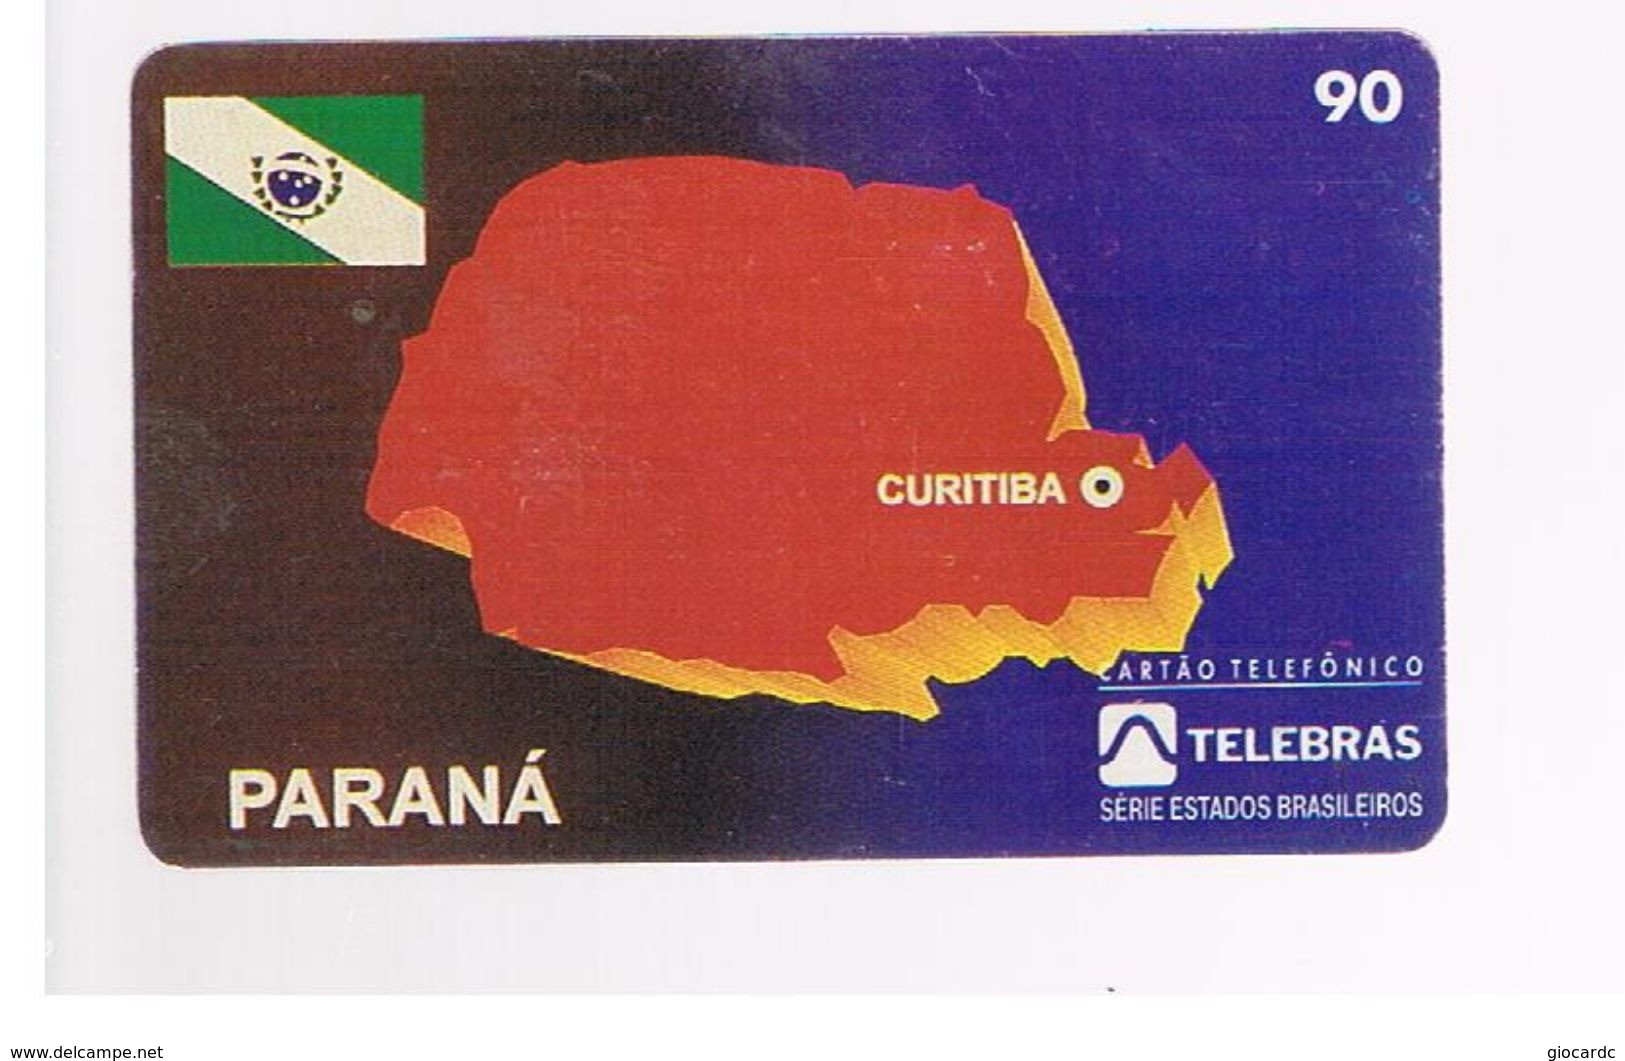 BRASILE ( BRAZIL) - TELEBRAS   -   1996 PARANA' MAP  - USED - RIF.10519 - Brasilien